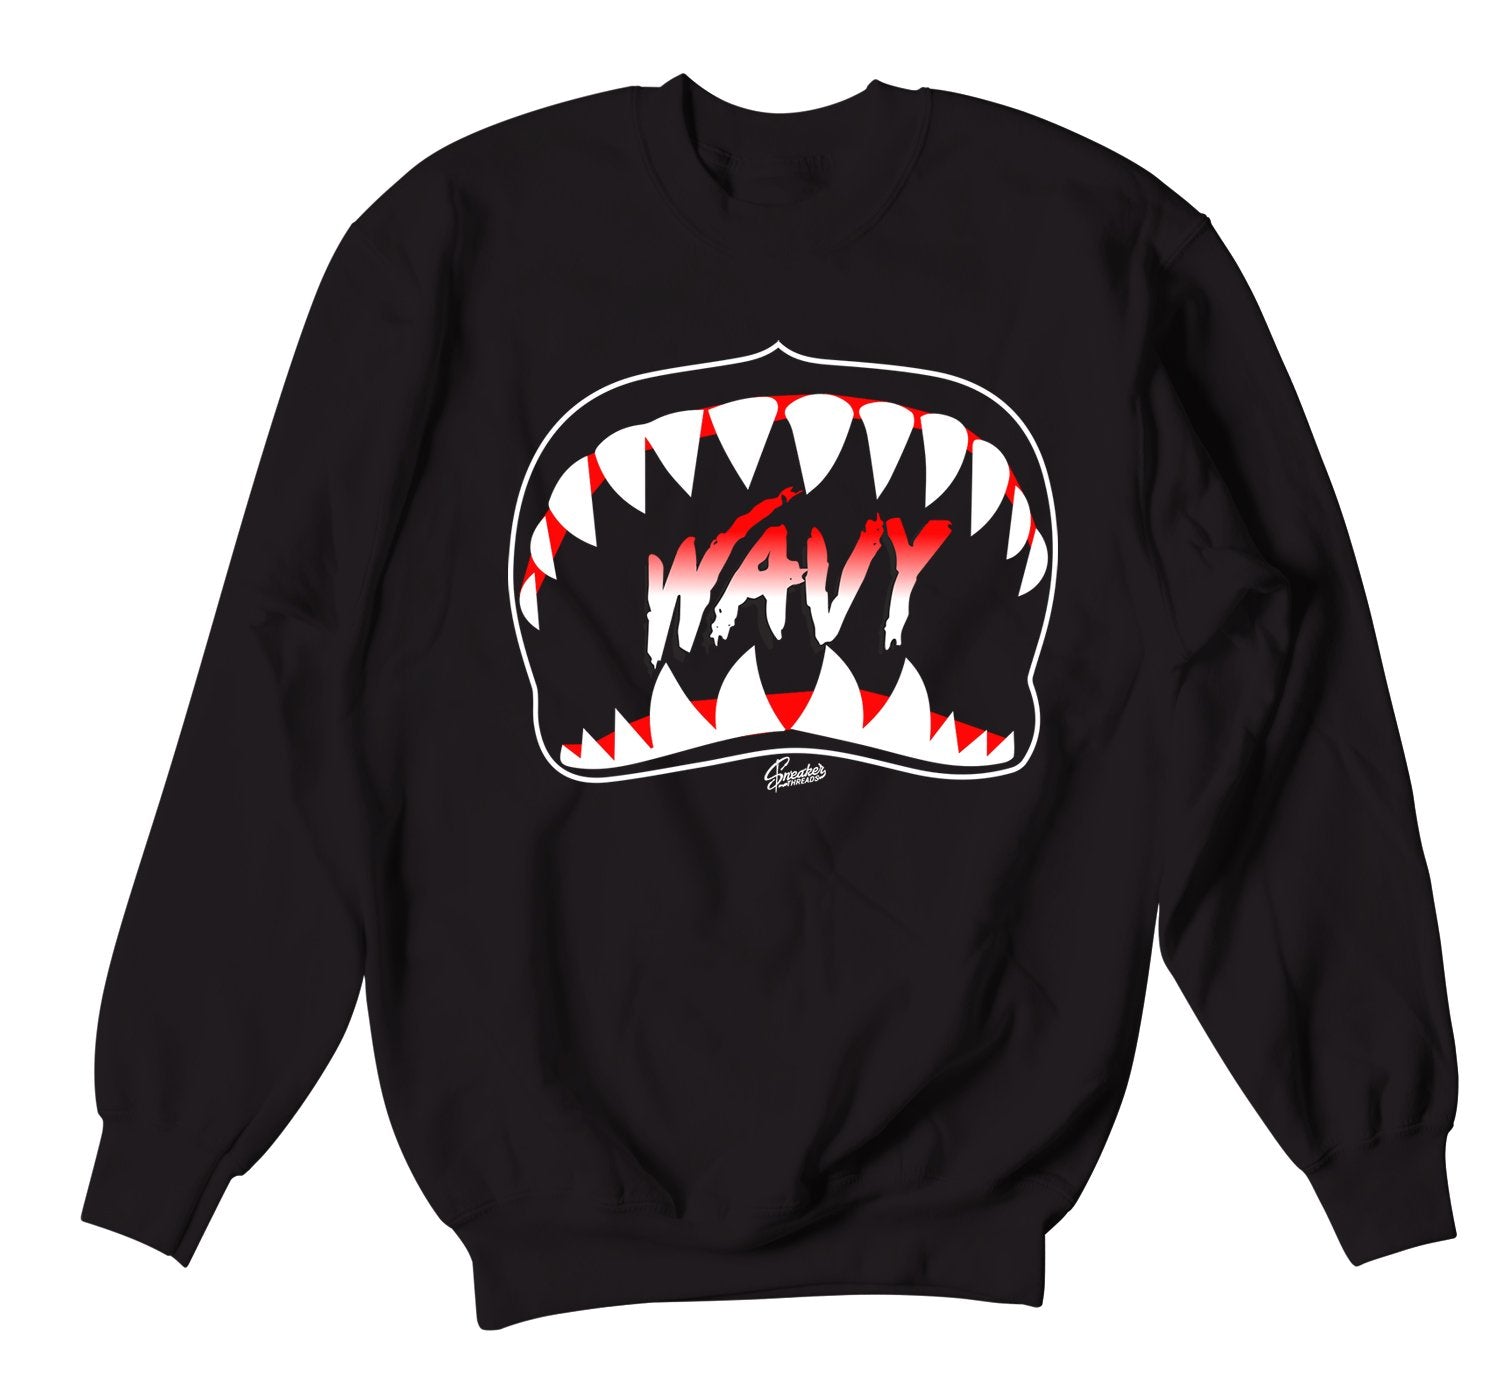 Yeezy Waviest Sweaters to match Yeezy v2 Black